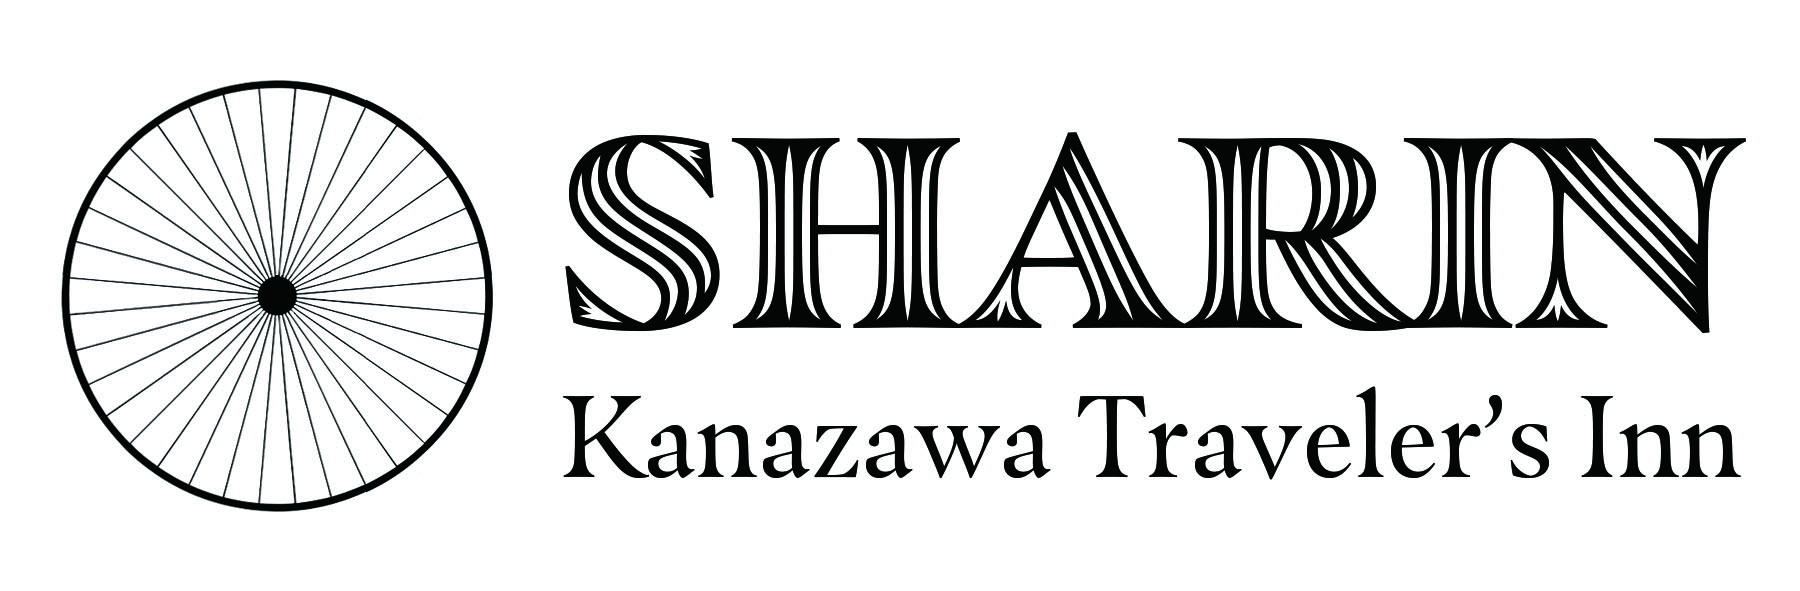 SHARIN Kanazawa Traveler's Inn Logo